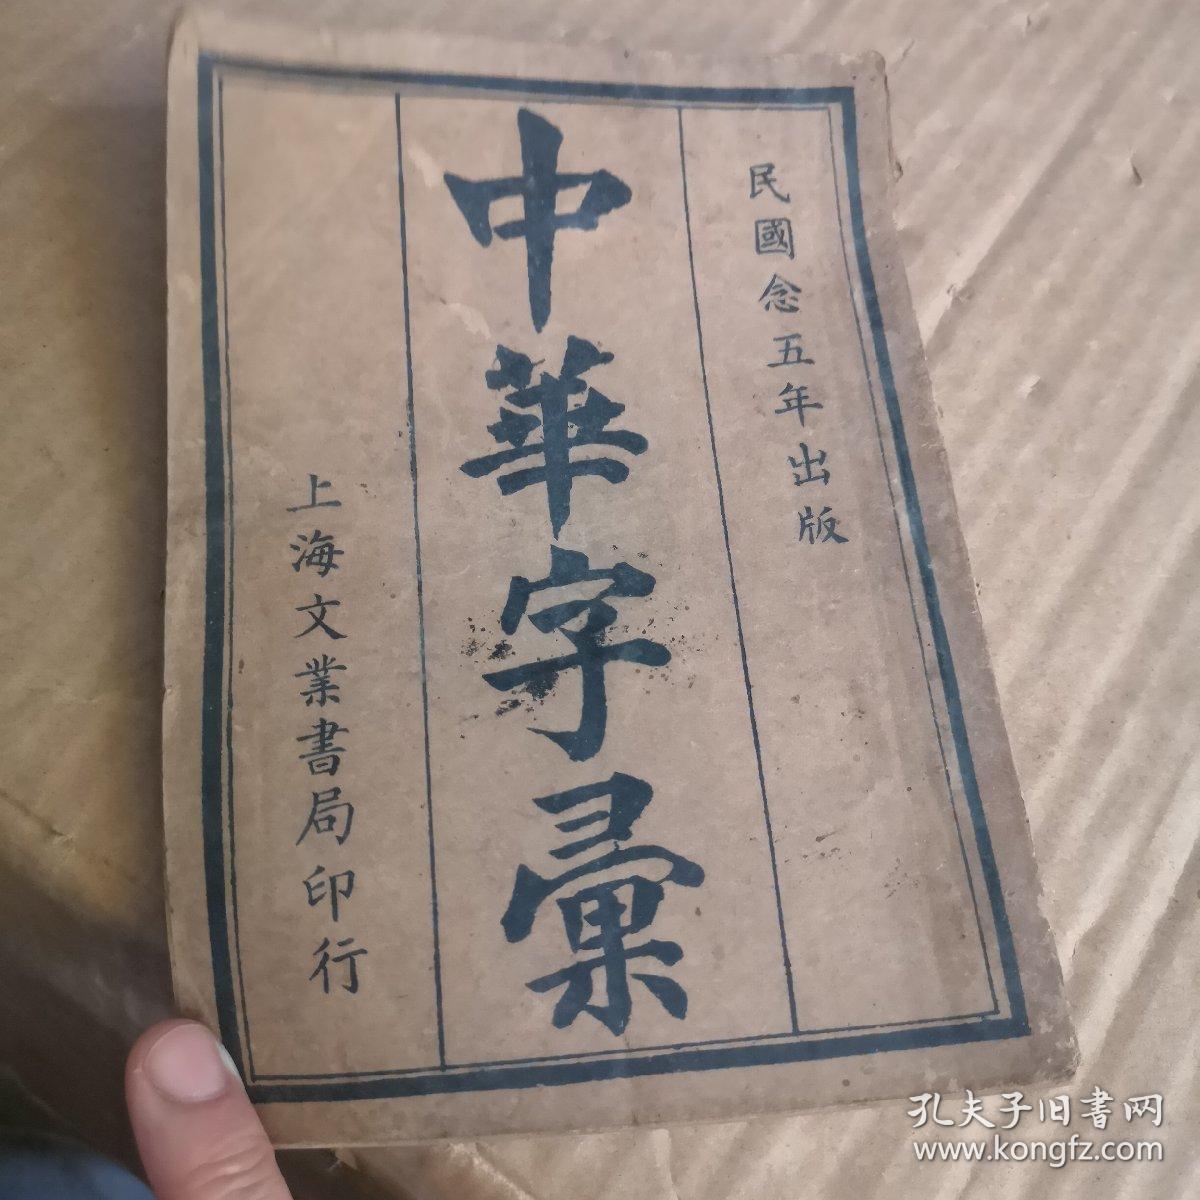 中华新字典全书一册  中华民国二十四年出版